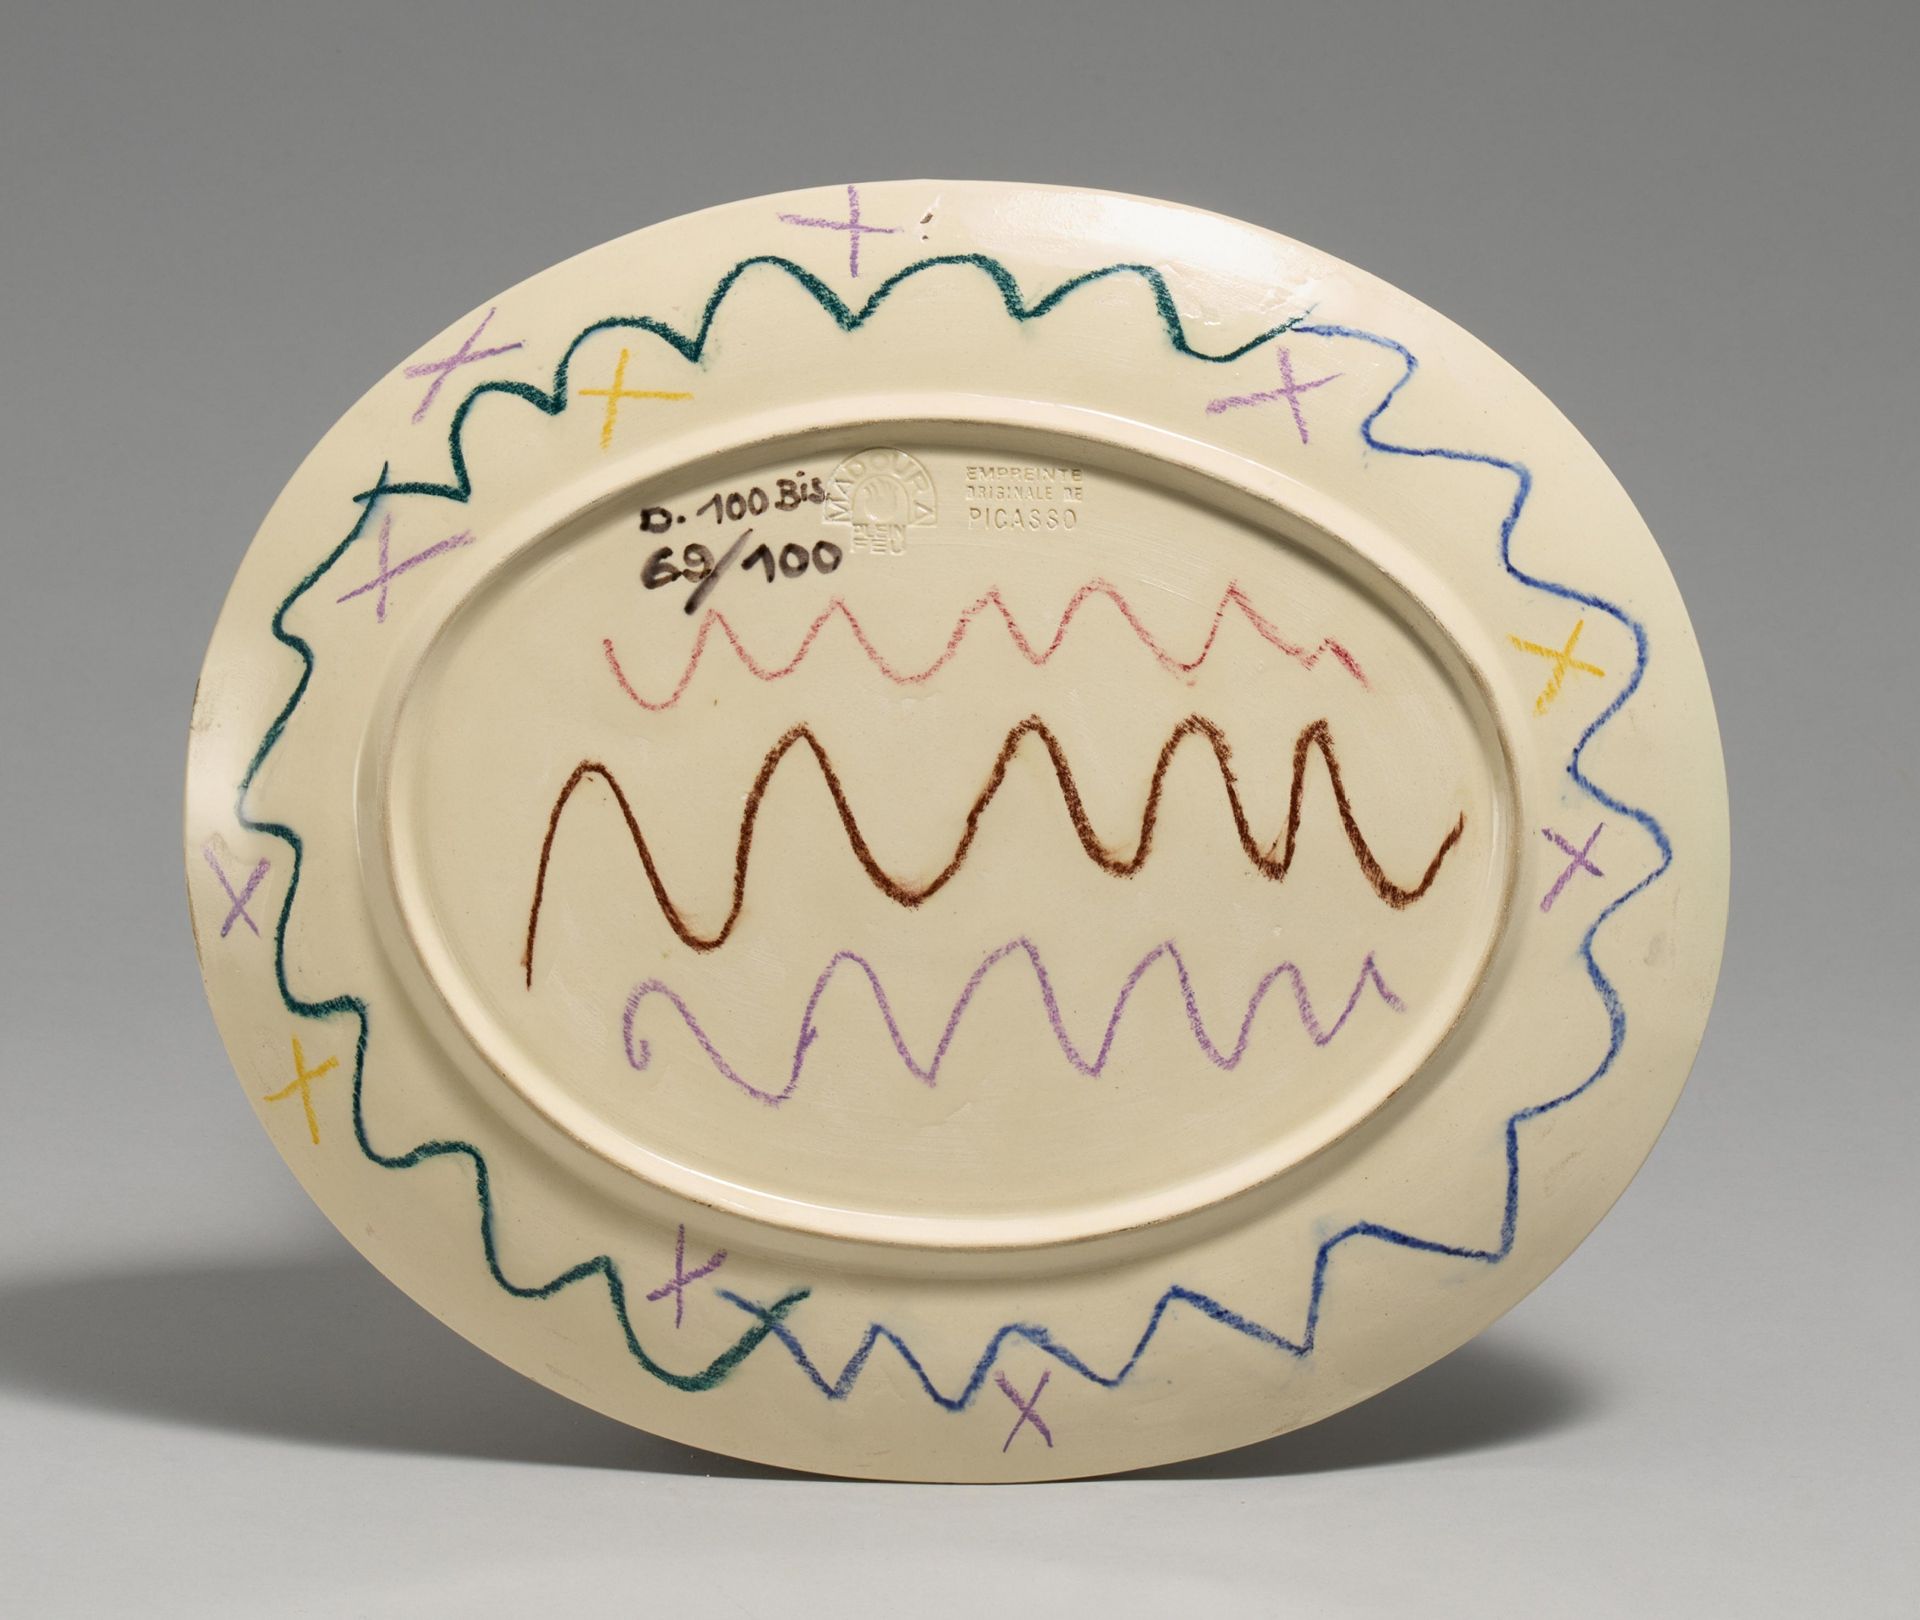 Pablo Picasso Ceramics: Geometric Face - Image 2 of 2